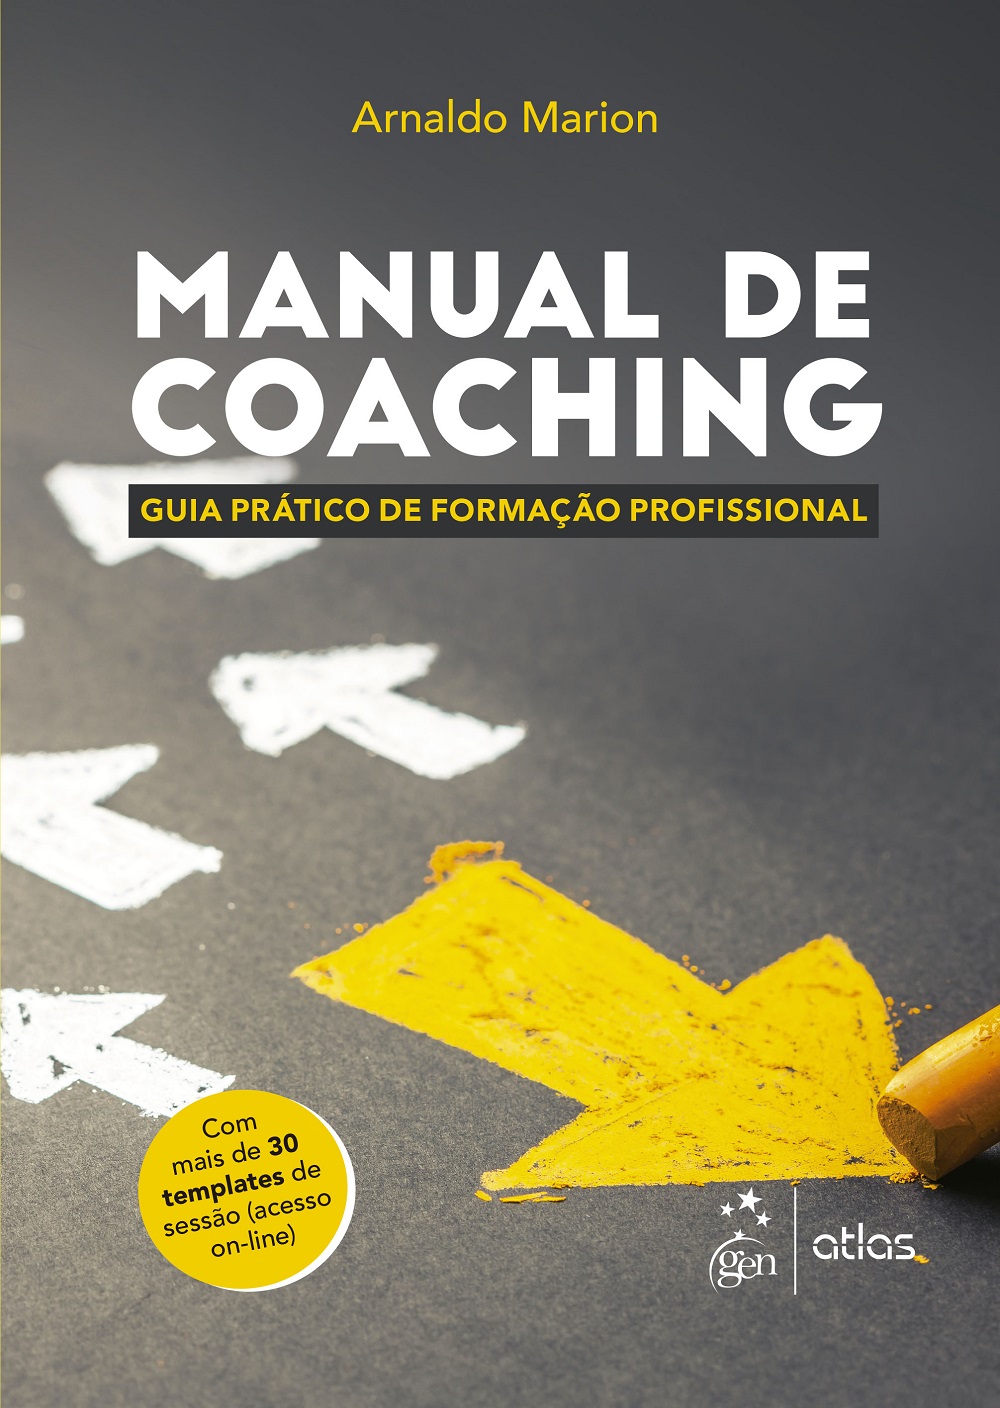 Manual de Coaching - Guia Prático de Formação Profissional